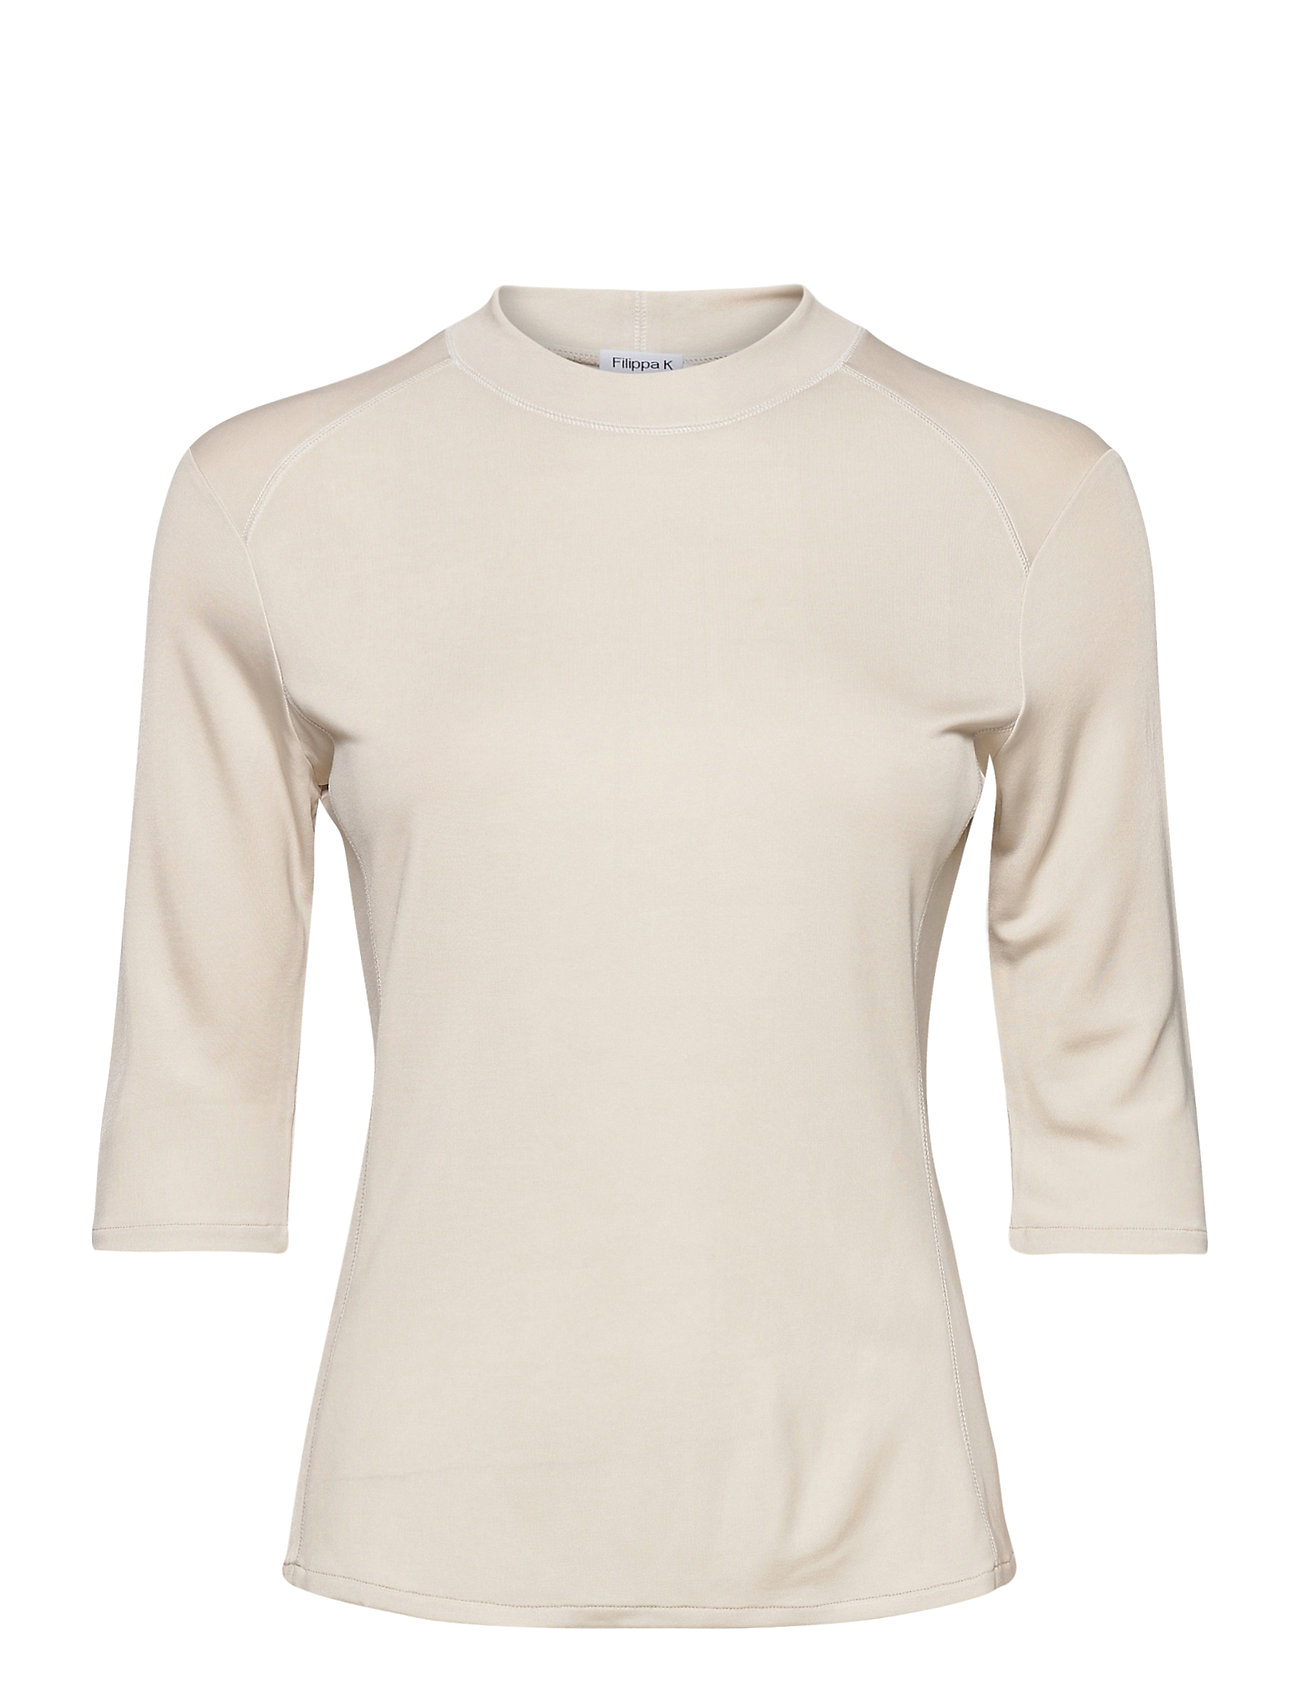 Margot Top T-shirts & Tops Long-sleeved Kermanvärinen Filippa K